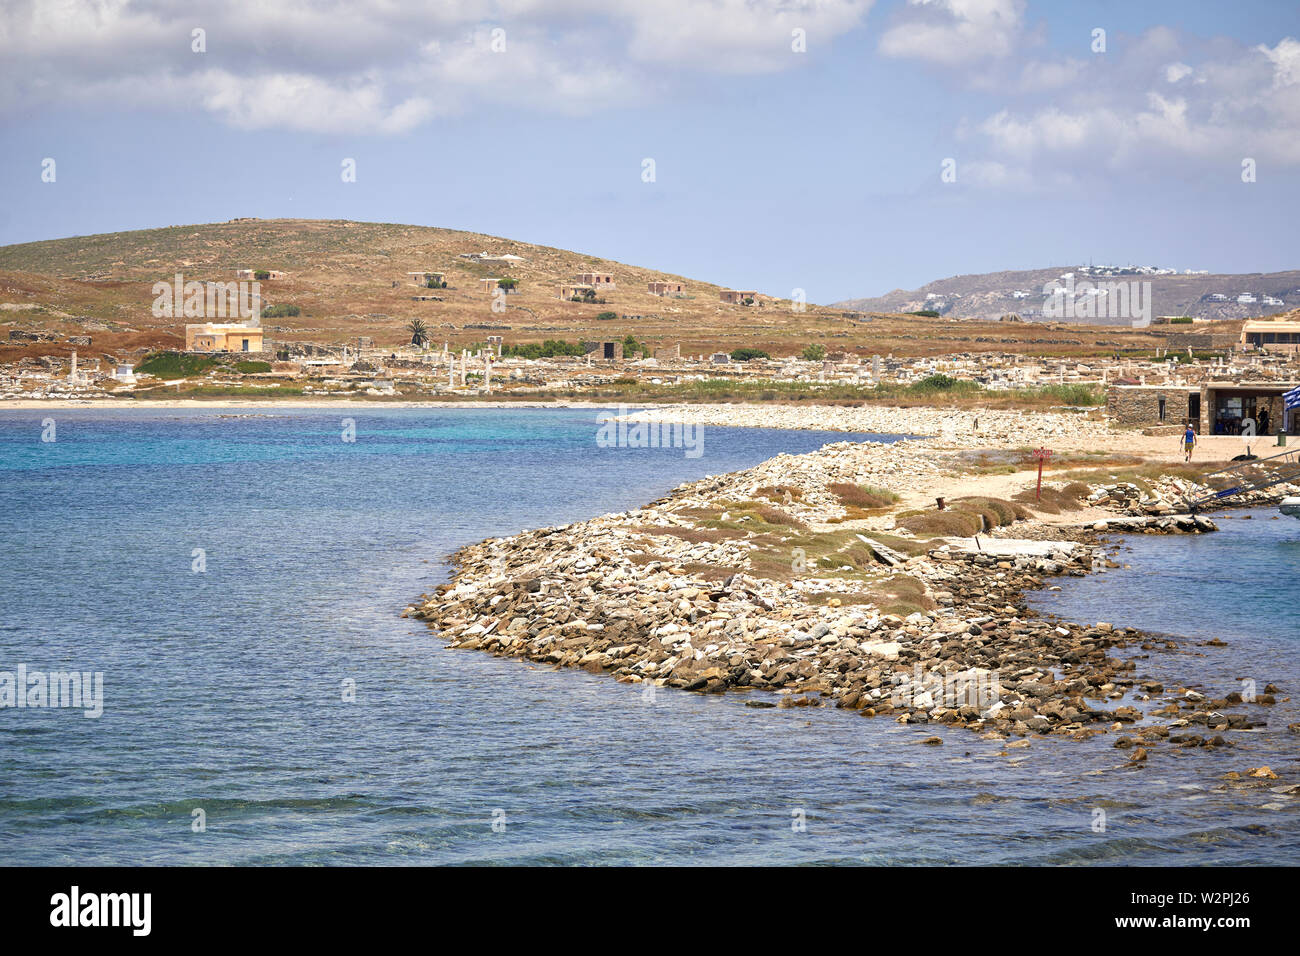 Mykonos, ˈmikonos isola greca, parte delle cicladi grecia, Delos storici e resti archeologici Foto Stock